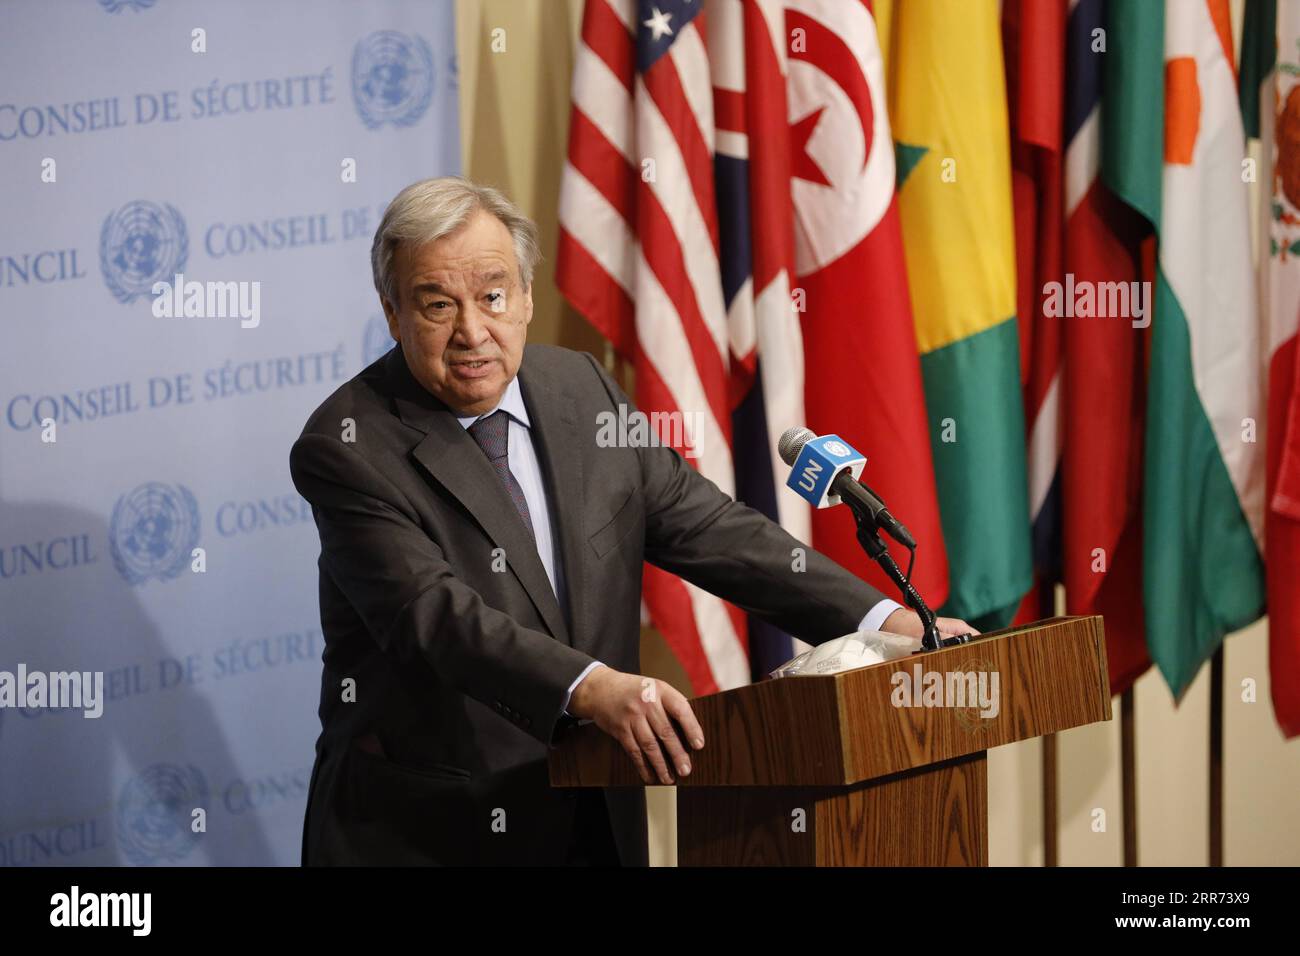 210311 -- NATIONS UNIES, le 11 mars 2021 -- le secrétaire général des Nations Unies Antonio Guterres prend la parole lors d'une rencontre de presse marquant le 10e anniversaire du conflit syrien au siège de l'ONU à New York, le 10 mars 2021. Le Secrétaire général des Nations Unies Antonio Guterres a exhorté mercredi la communauté internationale à continuer d’atteindre tous les Syriens qui ont besoin d’aide humanitaire. ANNIVERSAIRE DU CONFLIT SYRIEN-ONU-ANTONIO GUTERRES XIEXE PUBLICATIONXNOTXINXCHN Banque D'Images